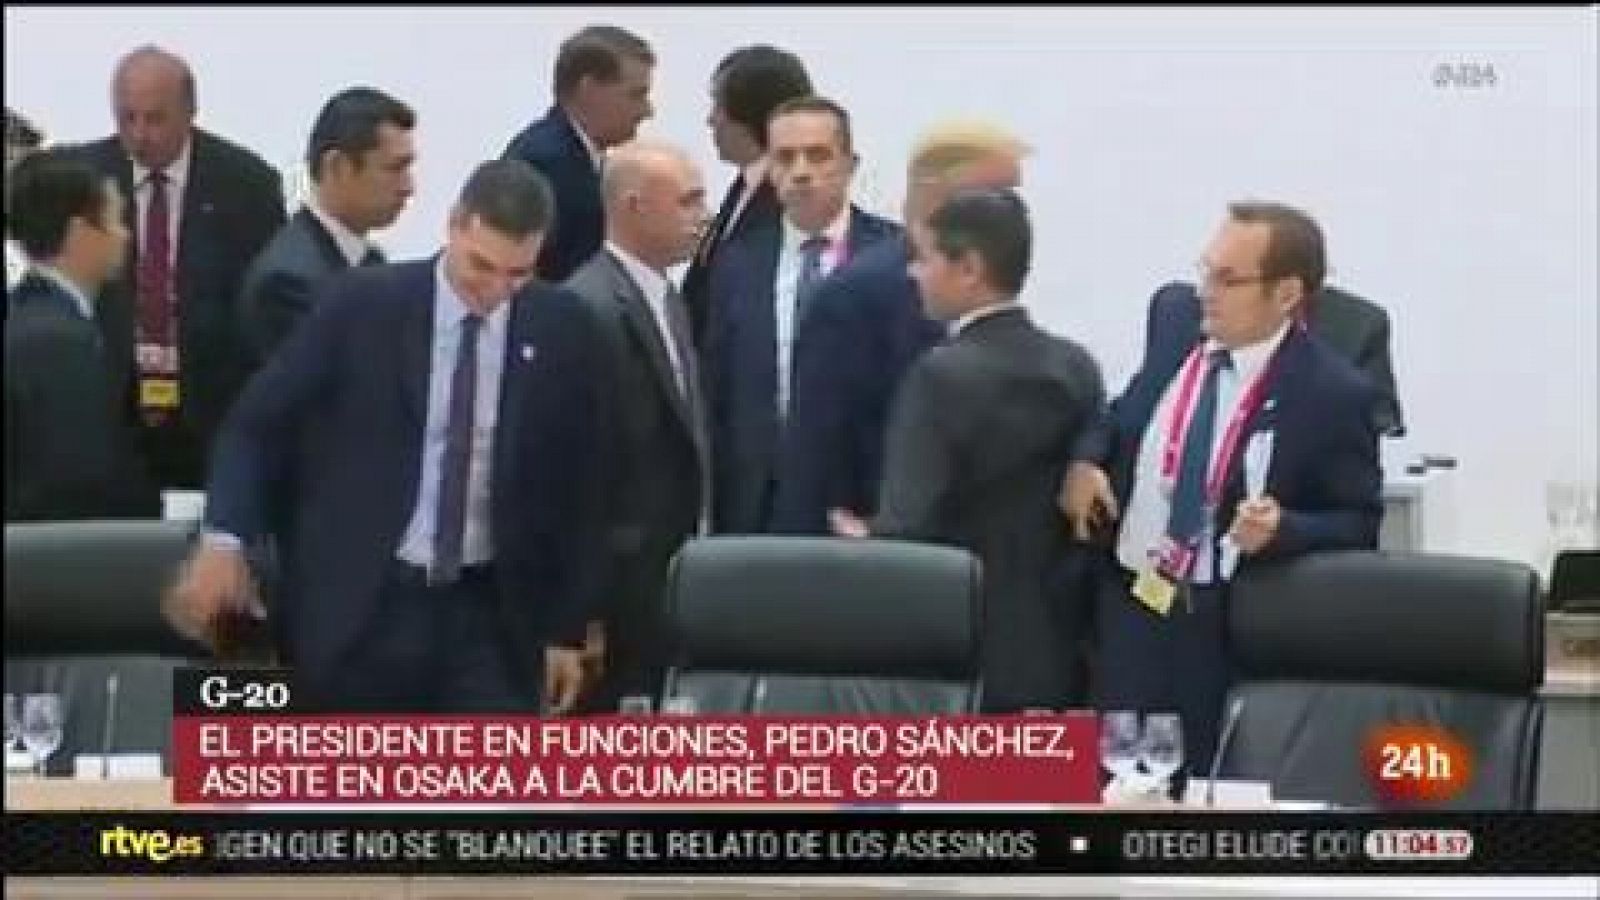 Trump 'saluda' a Pedro Sánchez durante el G20 y le señala su asiento